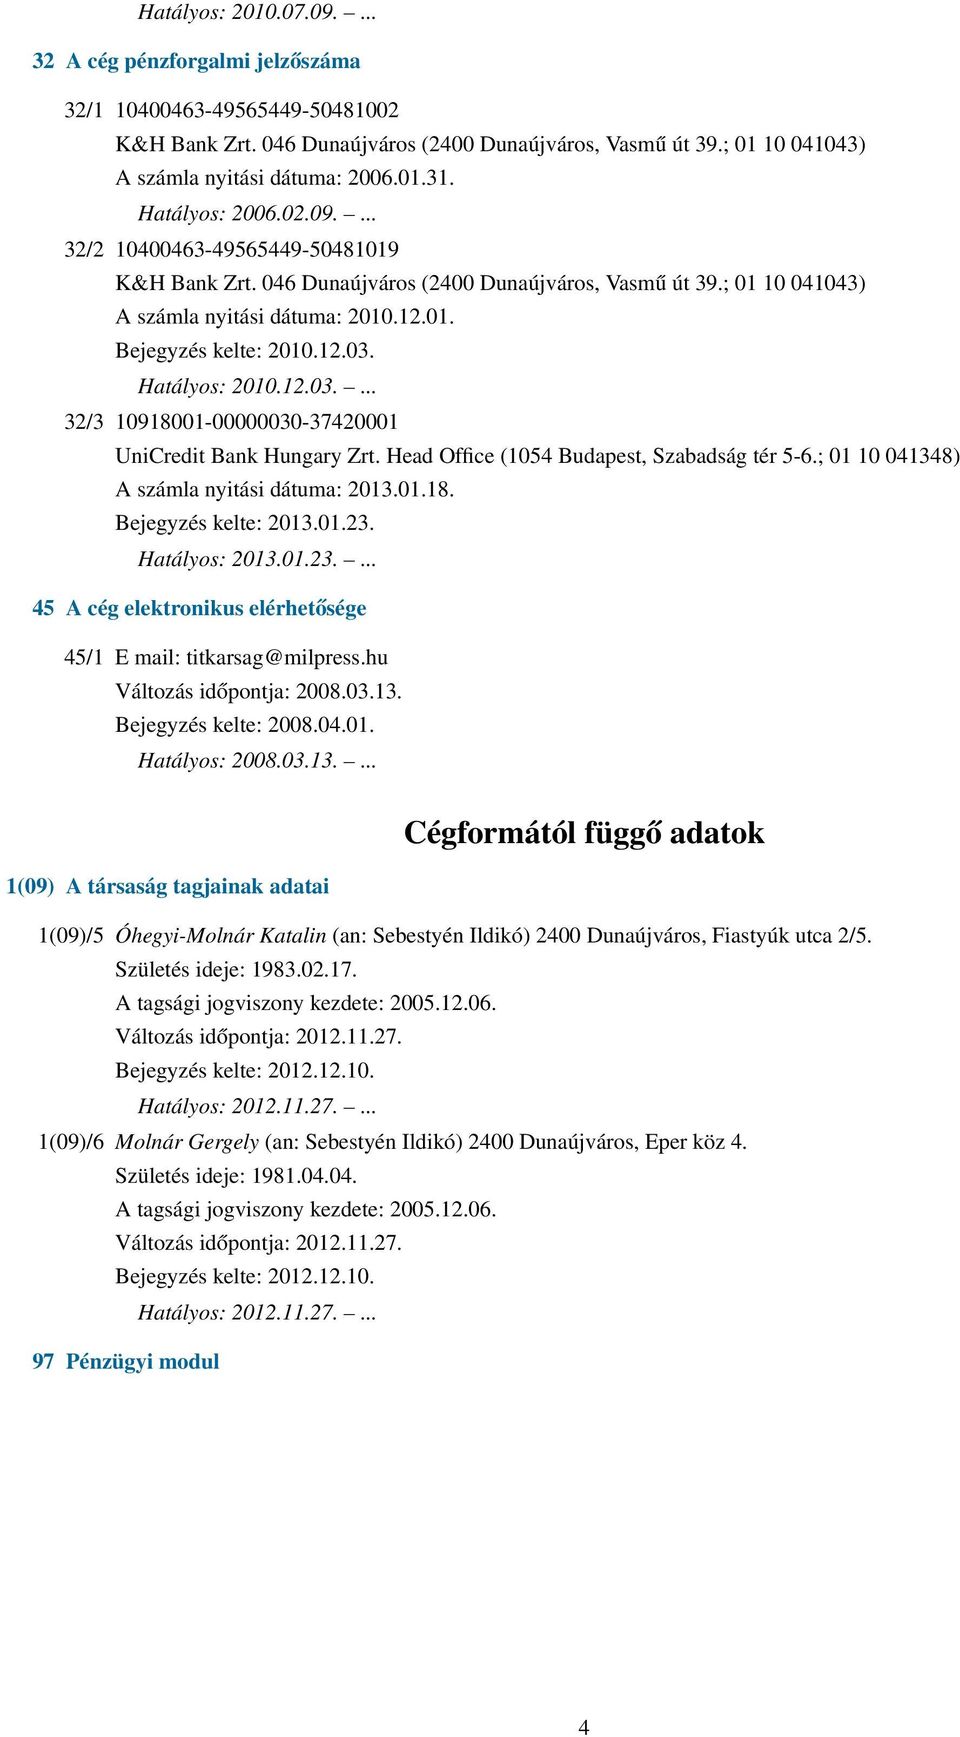 Hatályos: 2010.12.03.... 32/3 10918001-00000030-37420001 UniCredit Bank Hungary Zrt. Head Office (1054 Budapest, Szabadság tér 5-6.; 01 10 041348) A számla nyitási dátuma: 2013.01.18. Bejegyzés kelte: 2013.